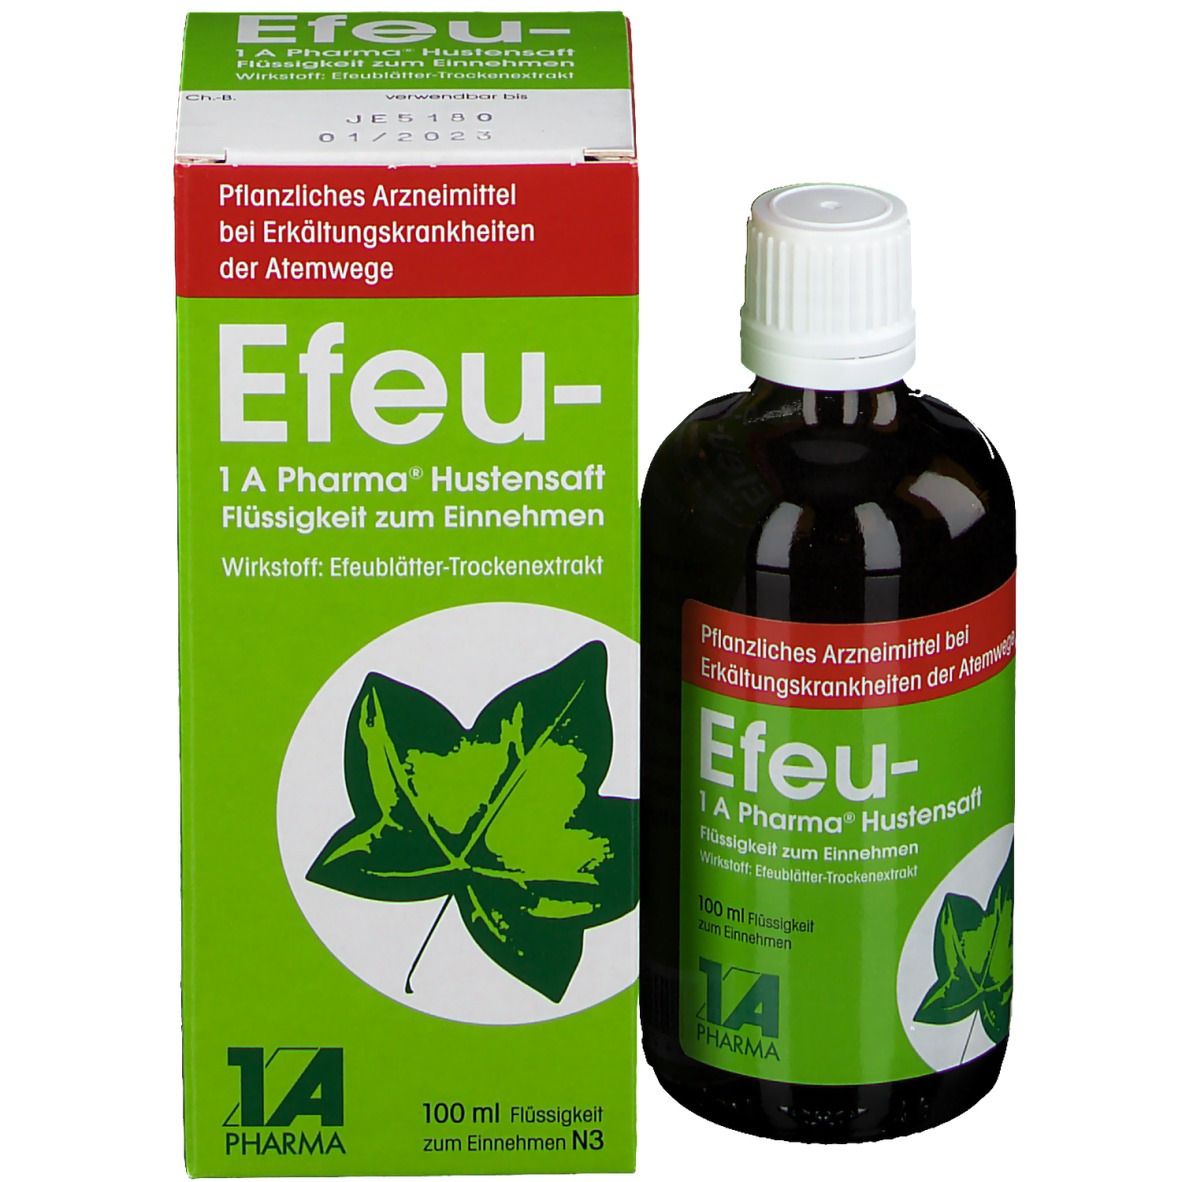 Efeu - 1 A Pharma®